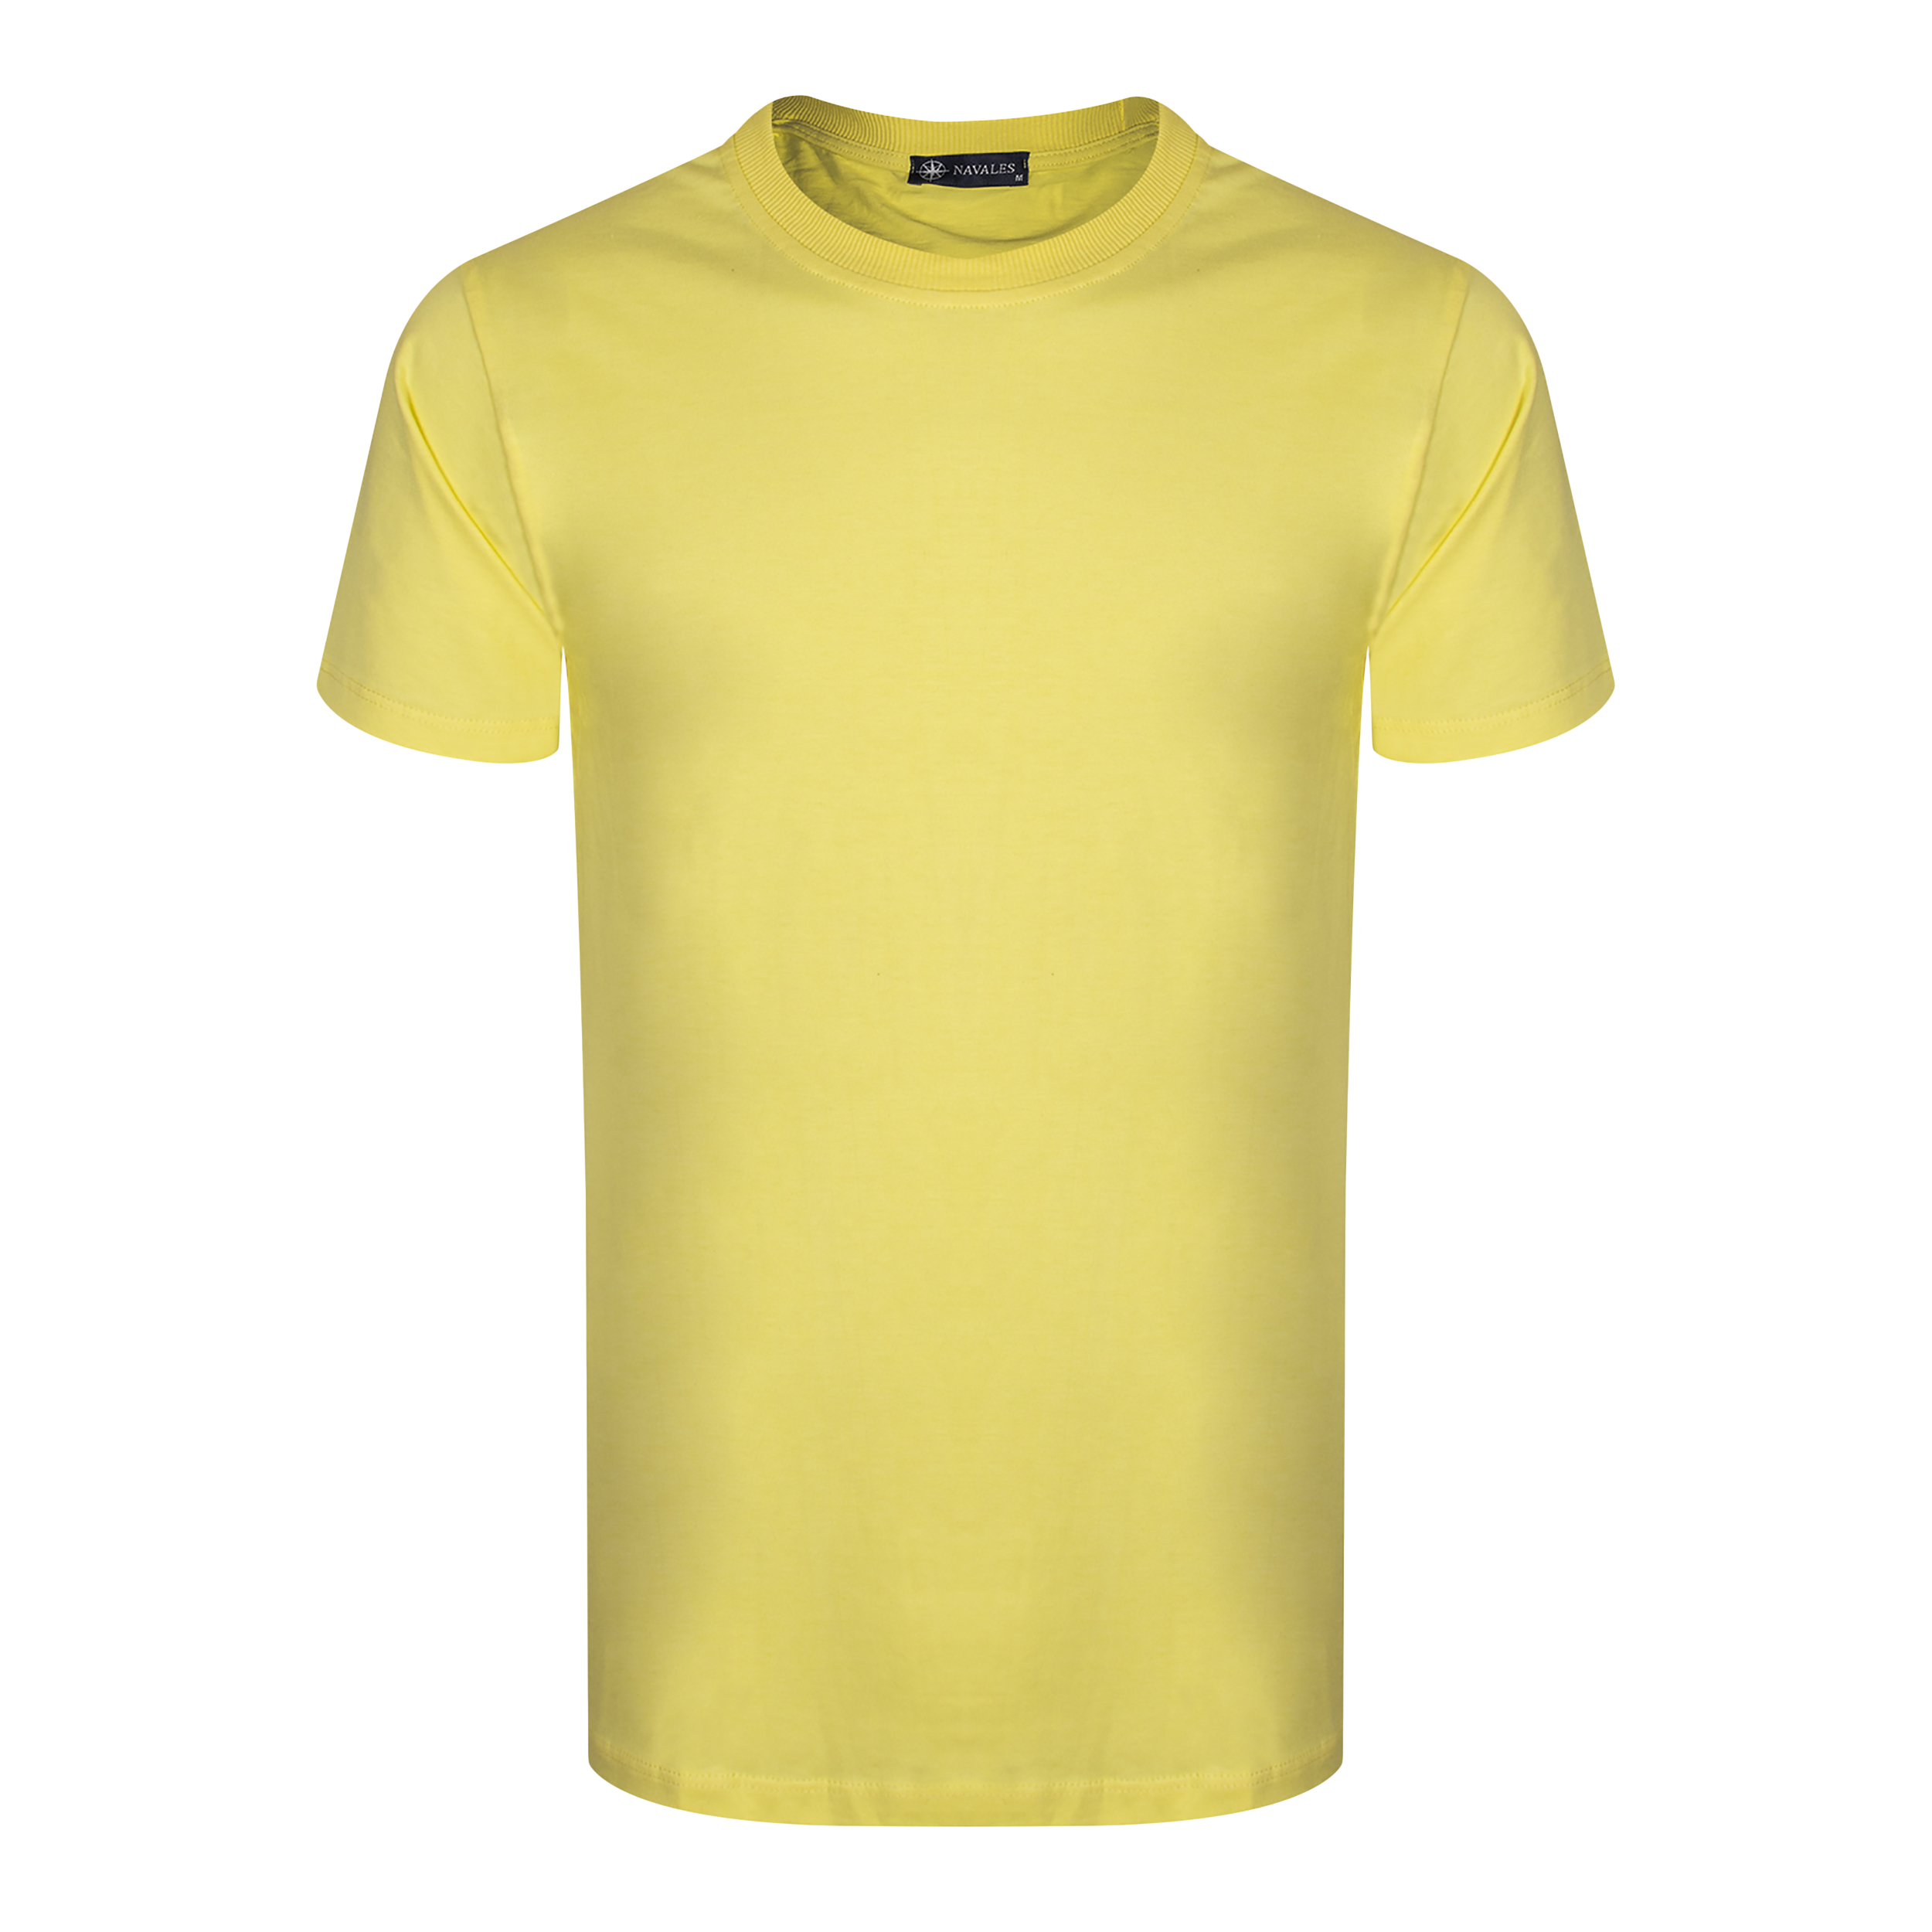 تی شرت آستین کوتاه مردانه ناوالس مدل OCEAN S/S TEES رنگ زرد